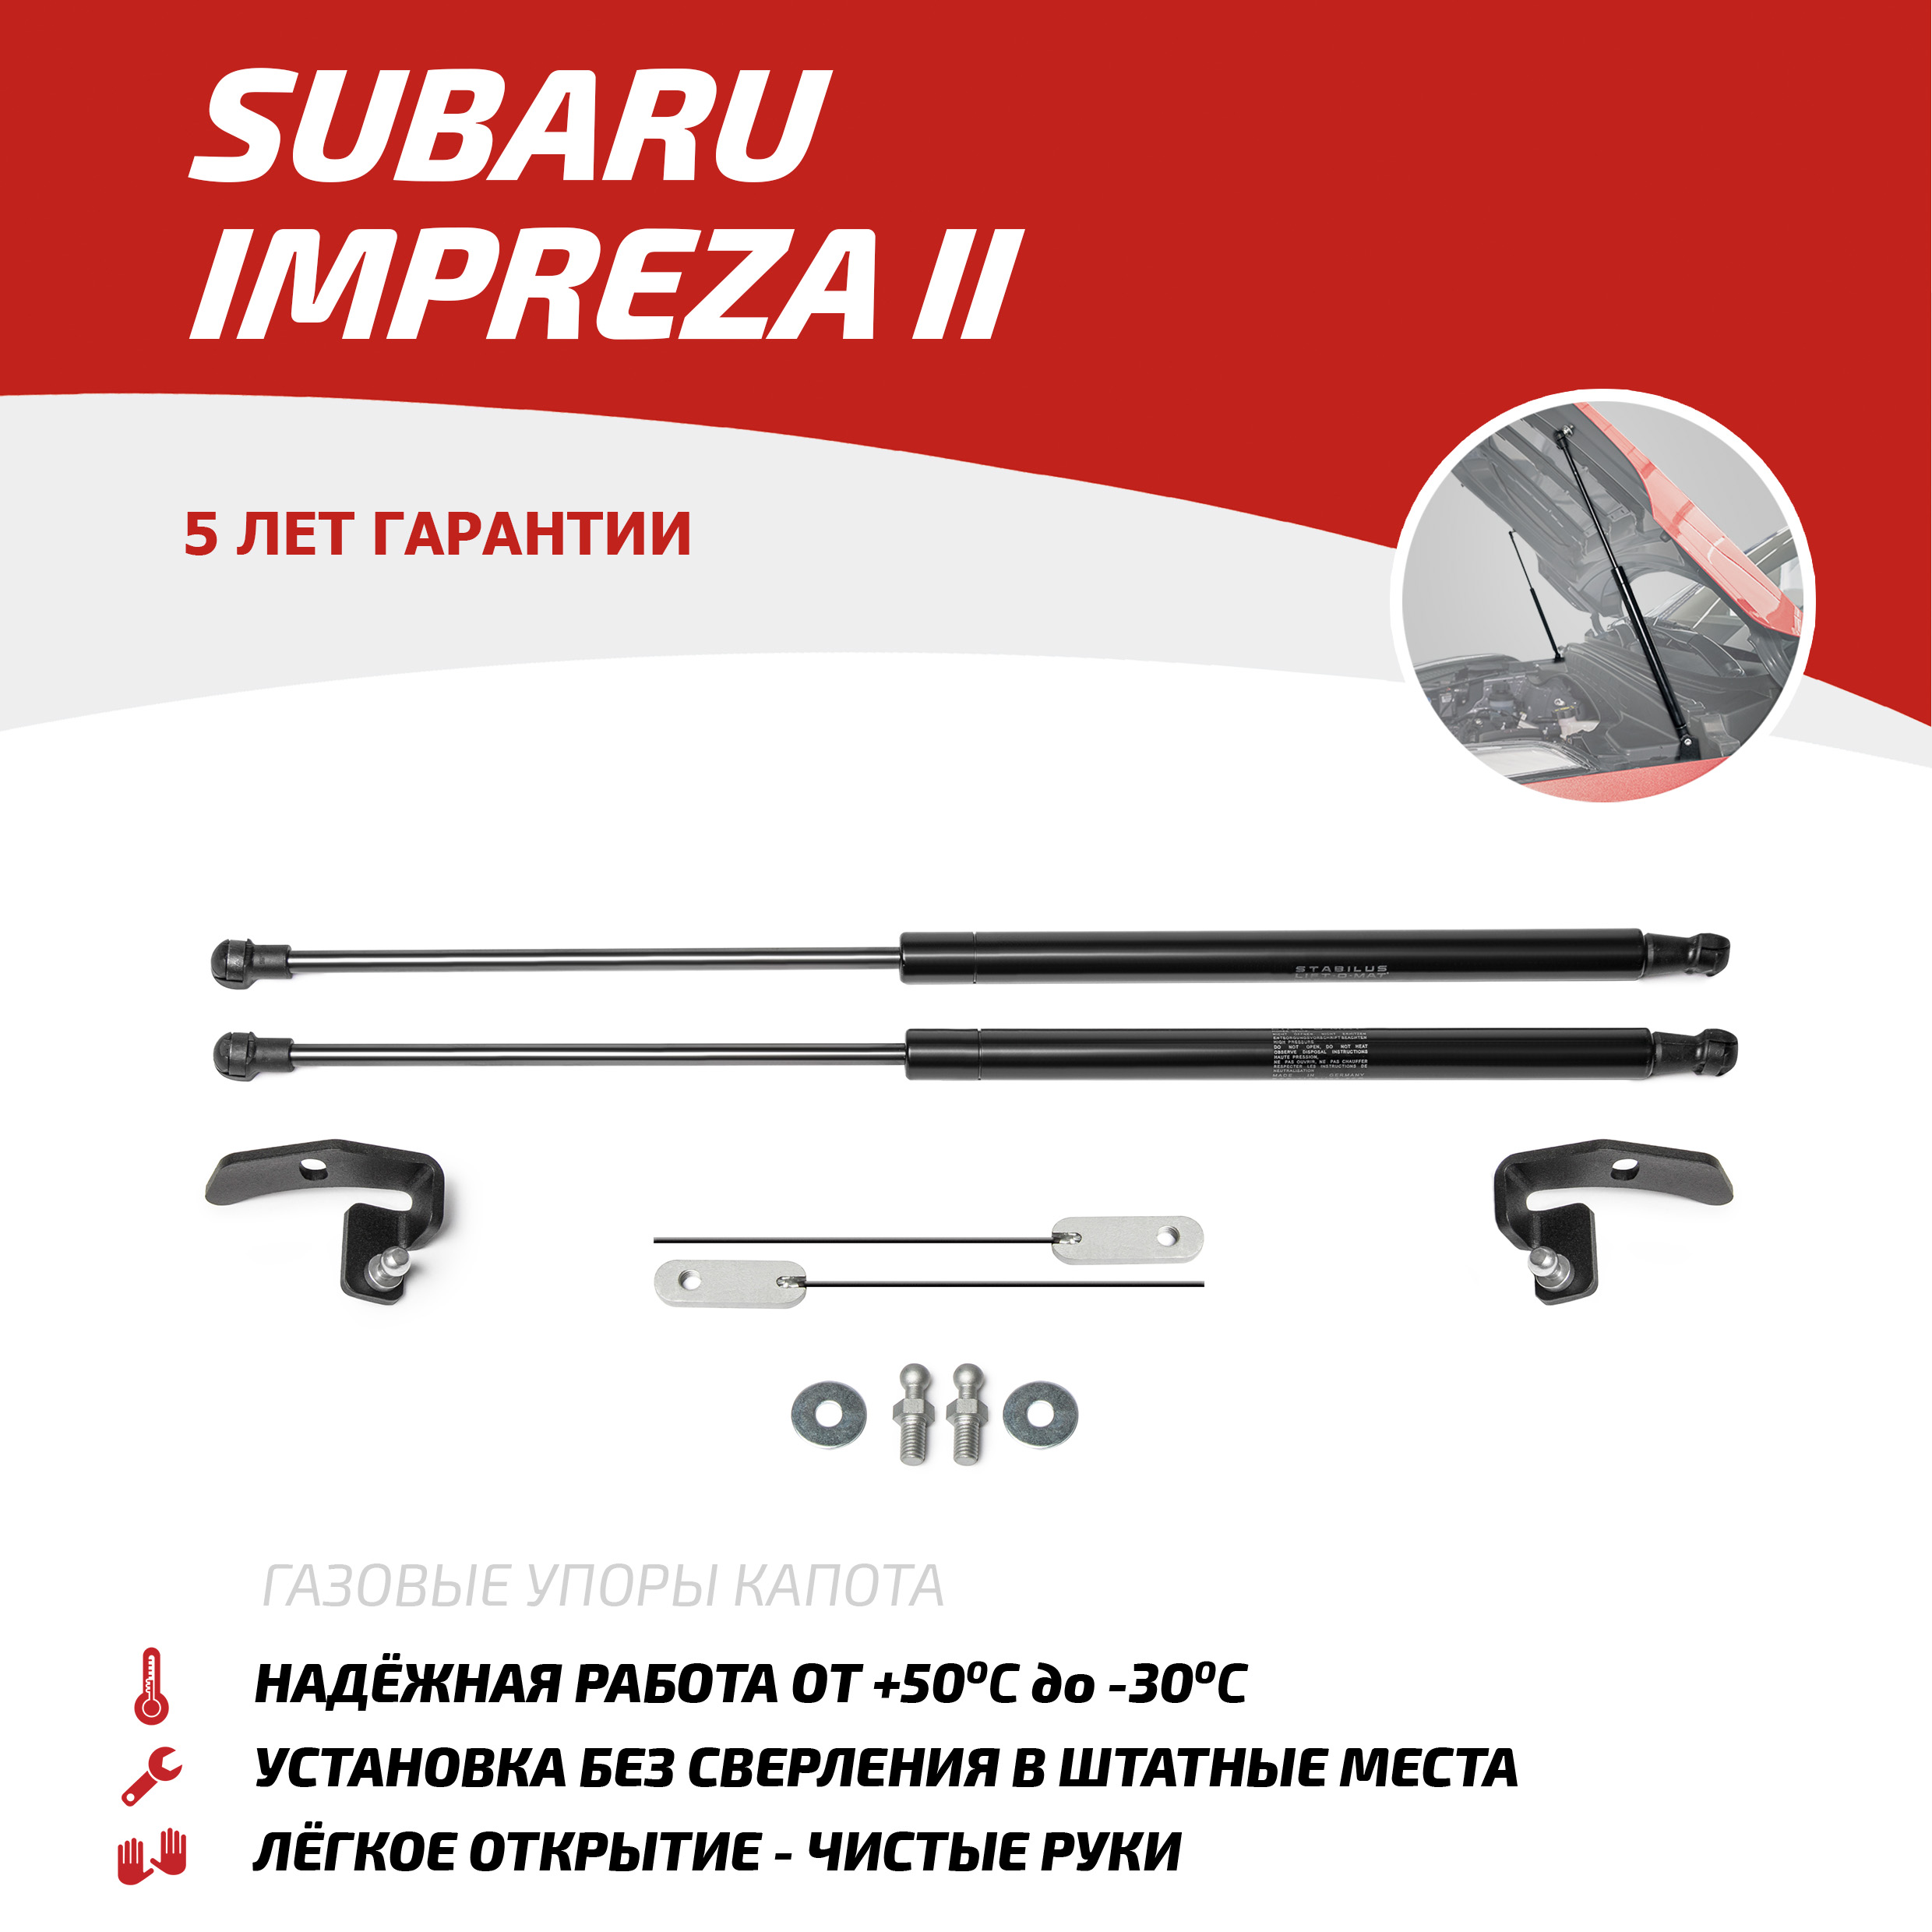 Газовые упоры капота АвтоУпор для Subaru Impreza II 2000-2007, 2 шт., USUIMP011